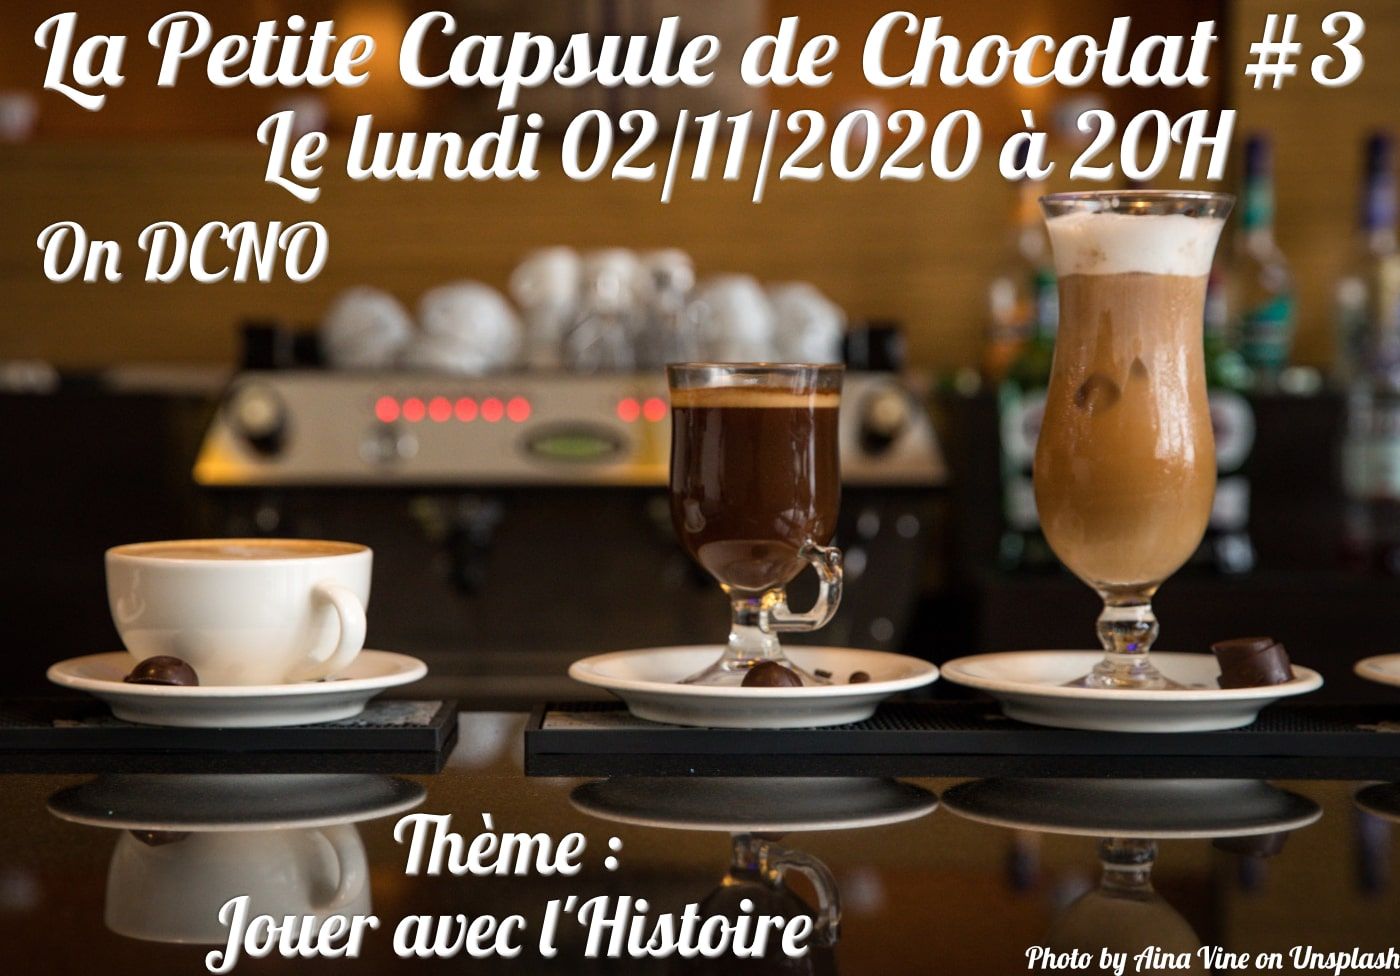 La Petite Capsule de Chocolat #3 :  Jouer avec l'Histoire